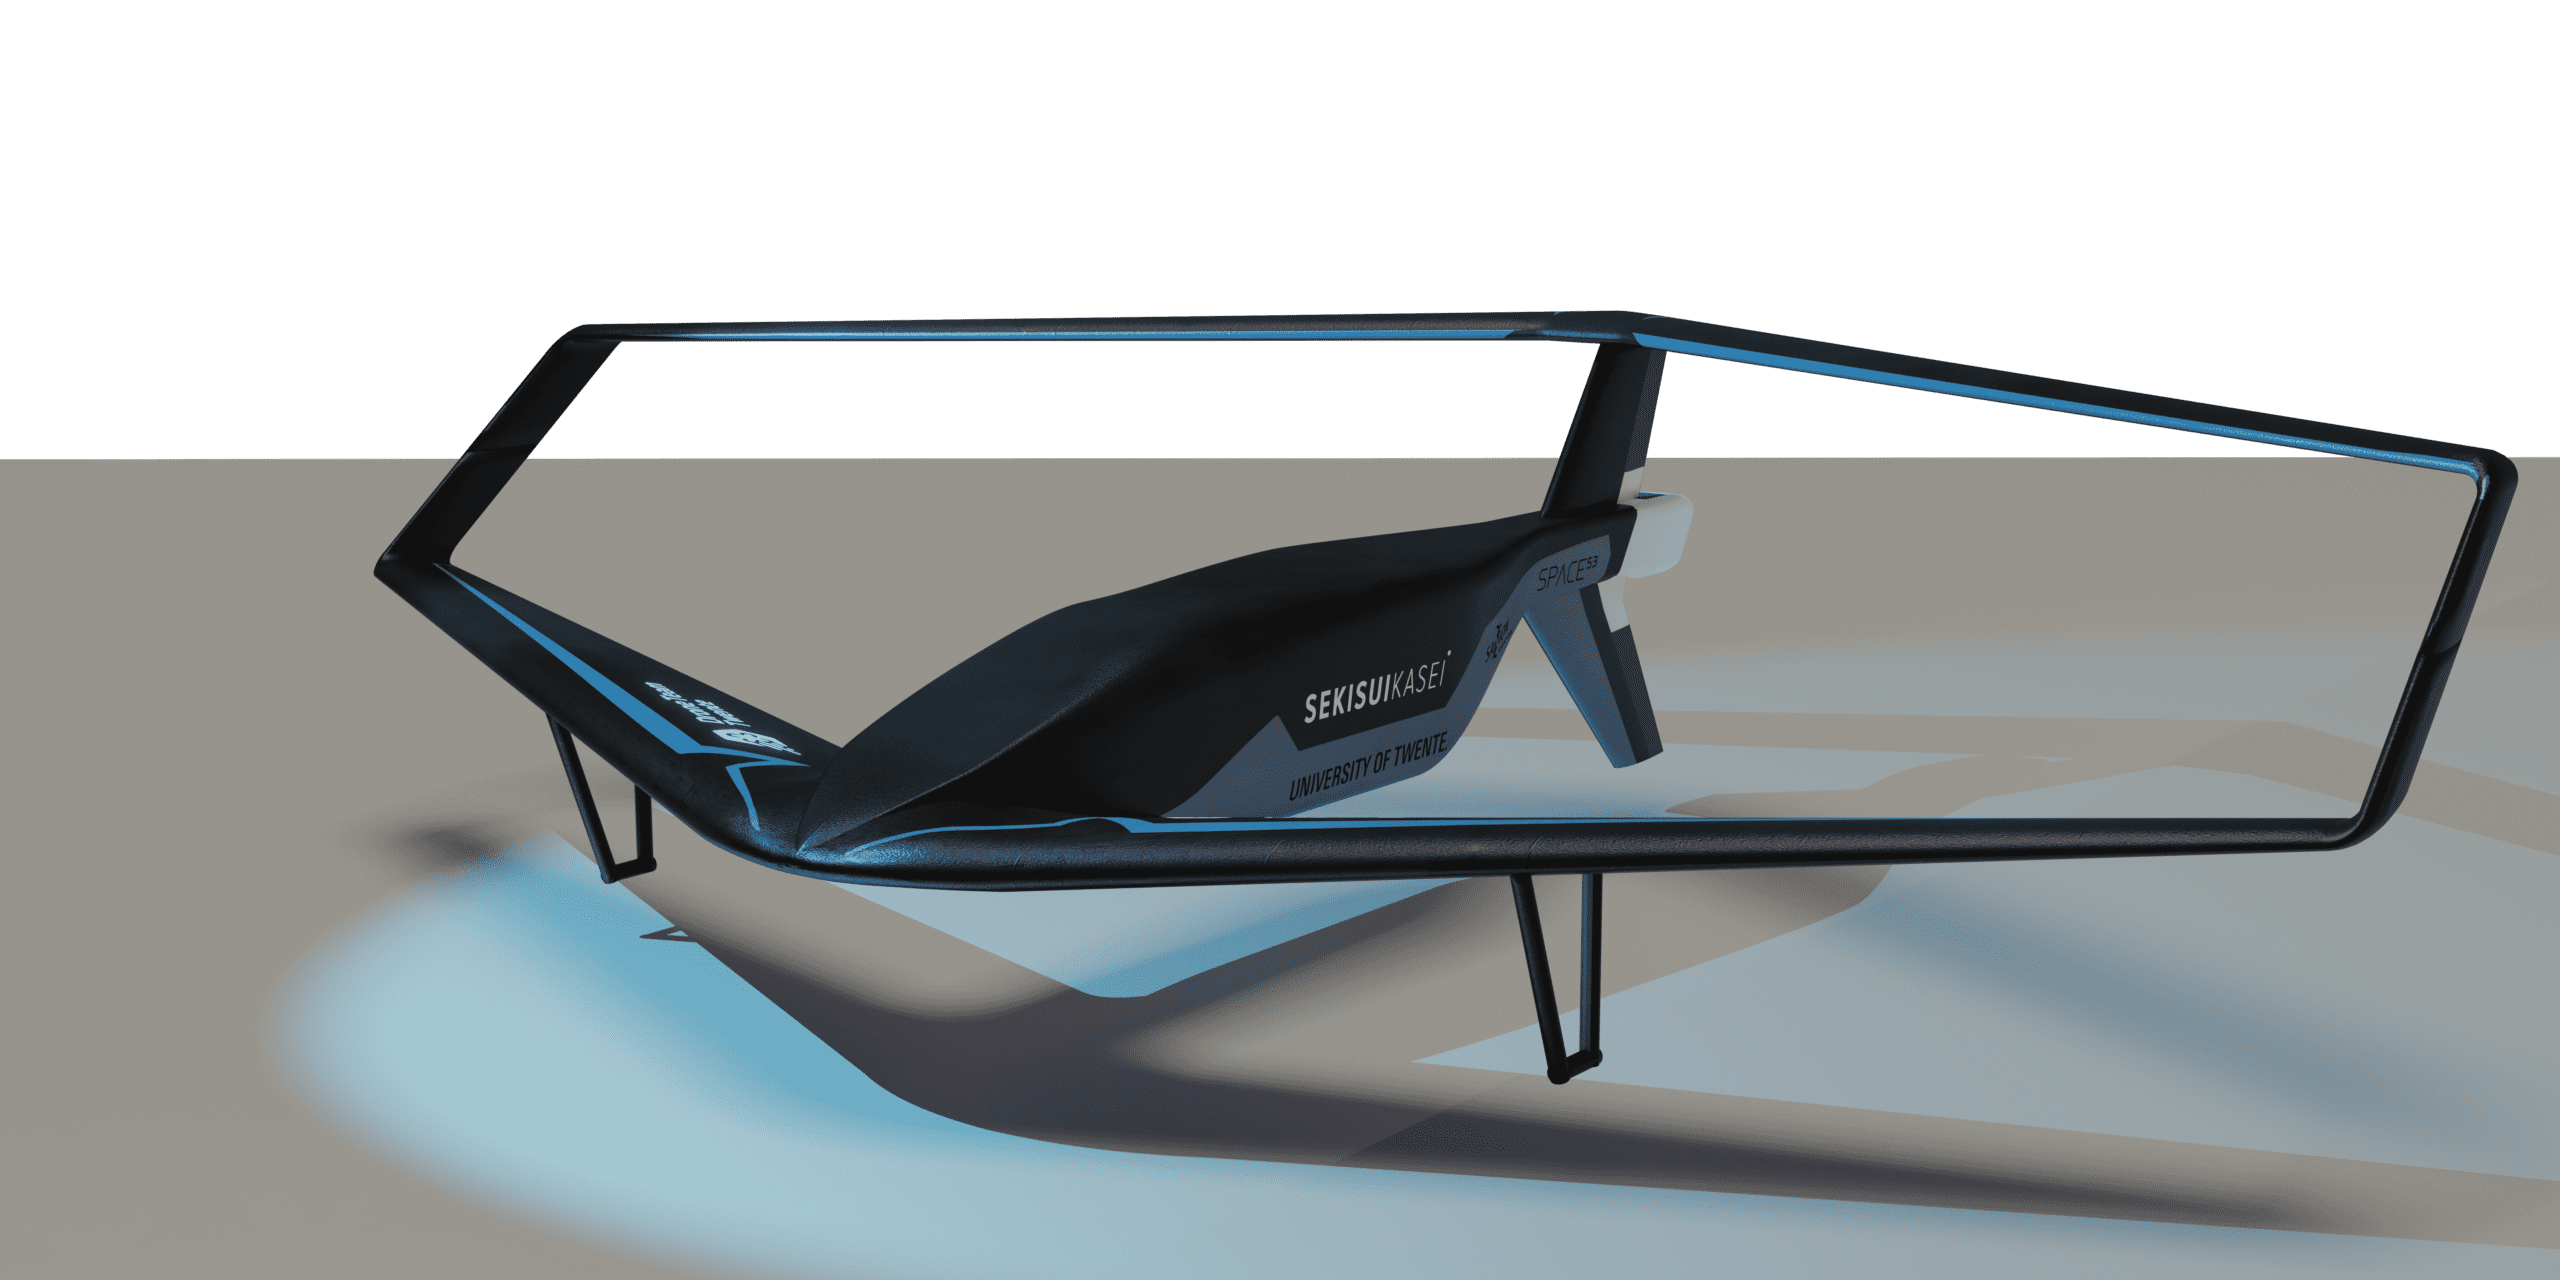 <a href="https://innovationorigins.com/en/selected/droneteam-twente-unveils-new-aid-drone/">Innovation Origins</a>